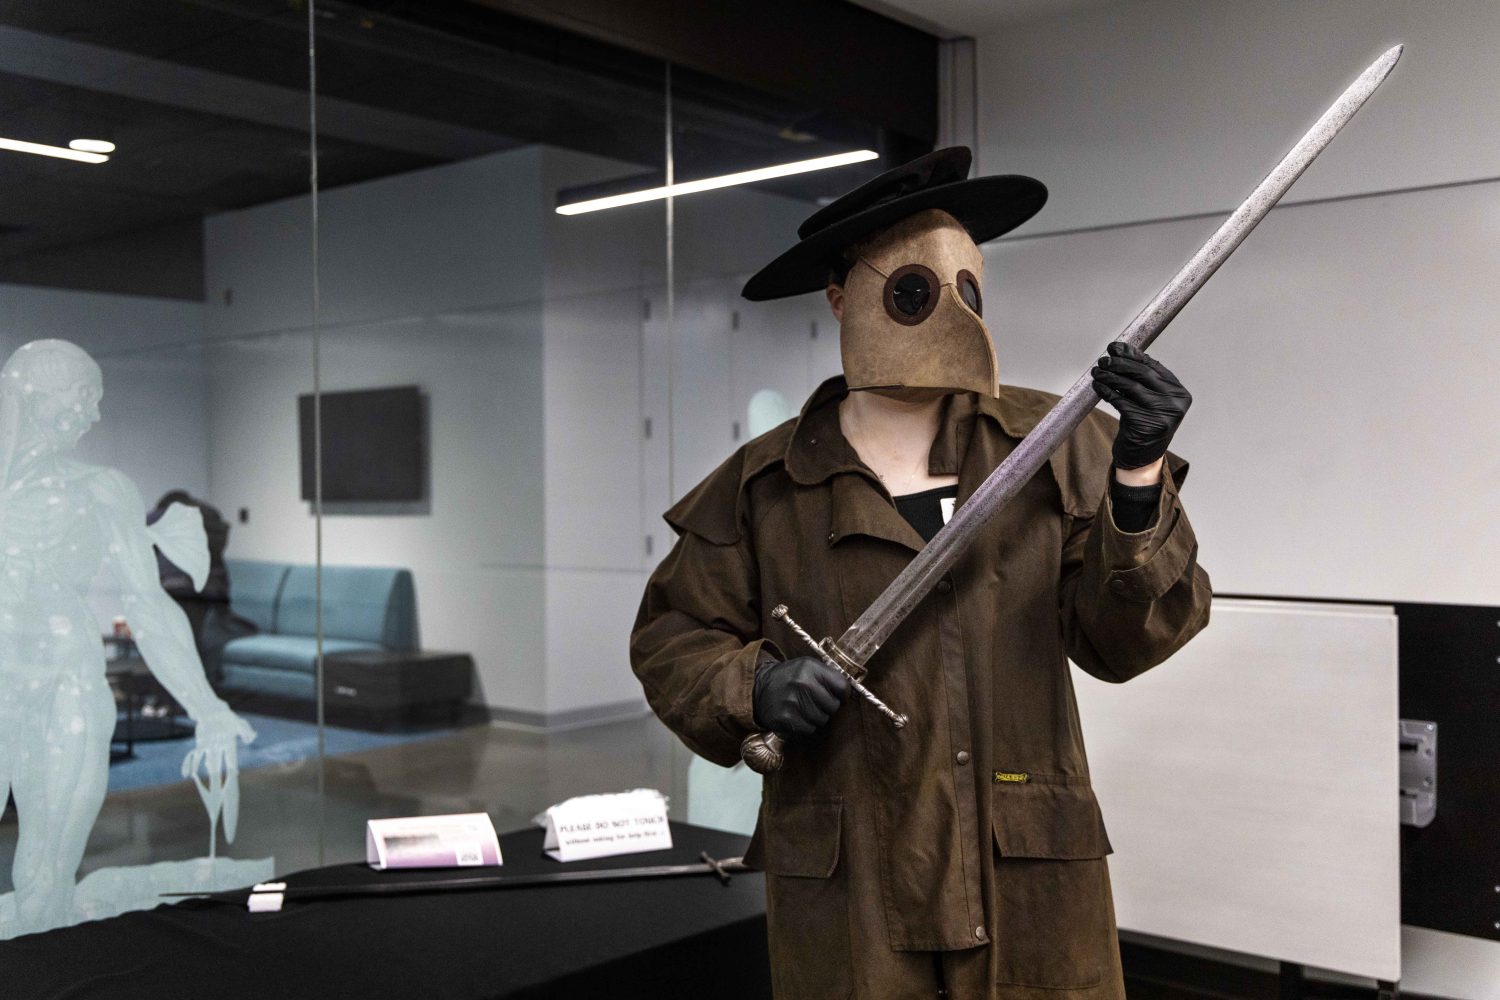 WHL's plague doctor wields an antique sword at the Wangensteen pop-up exhibit.